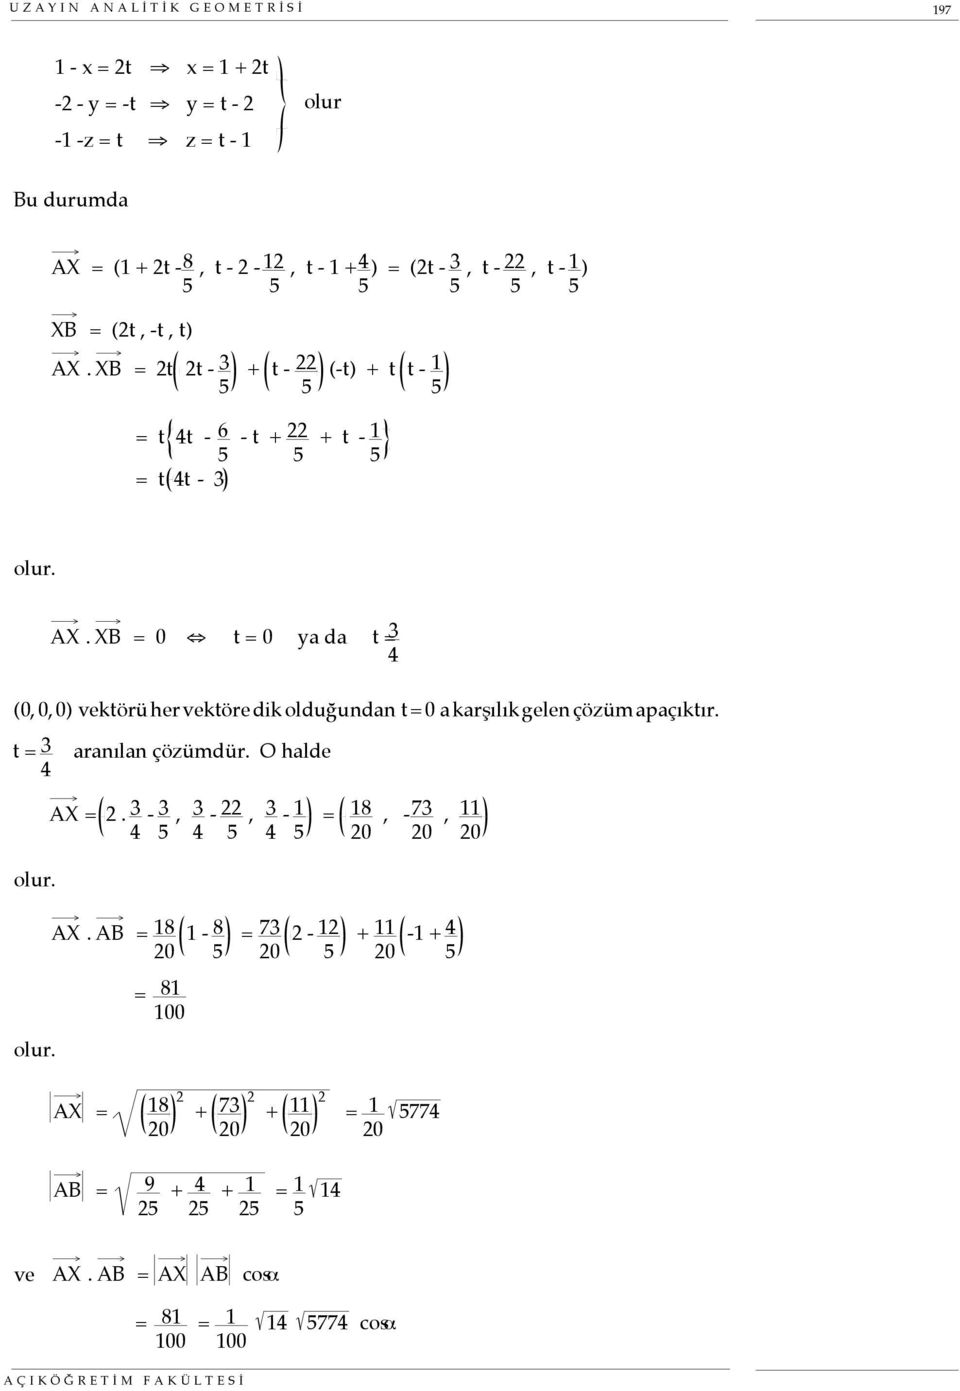 t = 3 4 aranılan çözümdür. O halde olur. AX = 2. 3 4-3 5, 3 4-22 5, 3 4-1 5 = 18 20, - 73 20, 11 20 olur. AX. AB = 18 20 1-8 5 = 73 20 2-12 5 = 81 100 2 2 2 AX = 18 + 73 + 11 20 20 20 + 11 20-1 + 4 5 = 1 20 5774 AB = 9 25 + 4 25 + 1 25 = 1 5 14 ve AX.